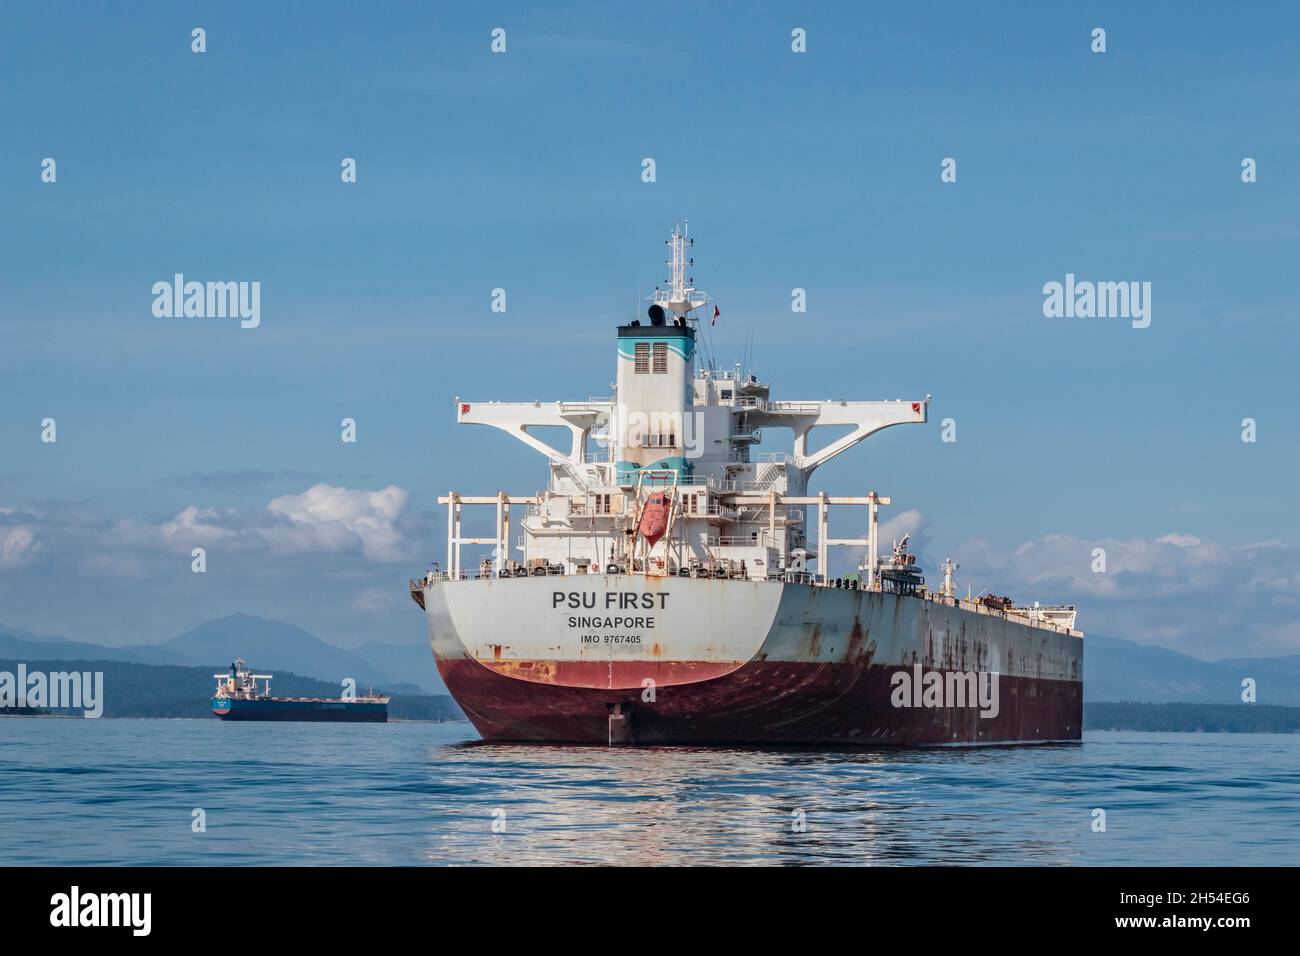 Zwei riesige Massenfrachtschiffe sind auf den Golfinseln von British Columbia vor Anker und warten darauf, den Hafen von Vancouver zu erreichen – ein Problem, das in der lokalen Öffentlichkeit große Besorgnis ausgelöst hat. Stockfoto